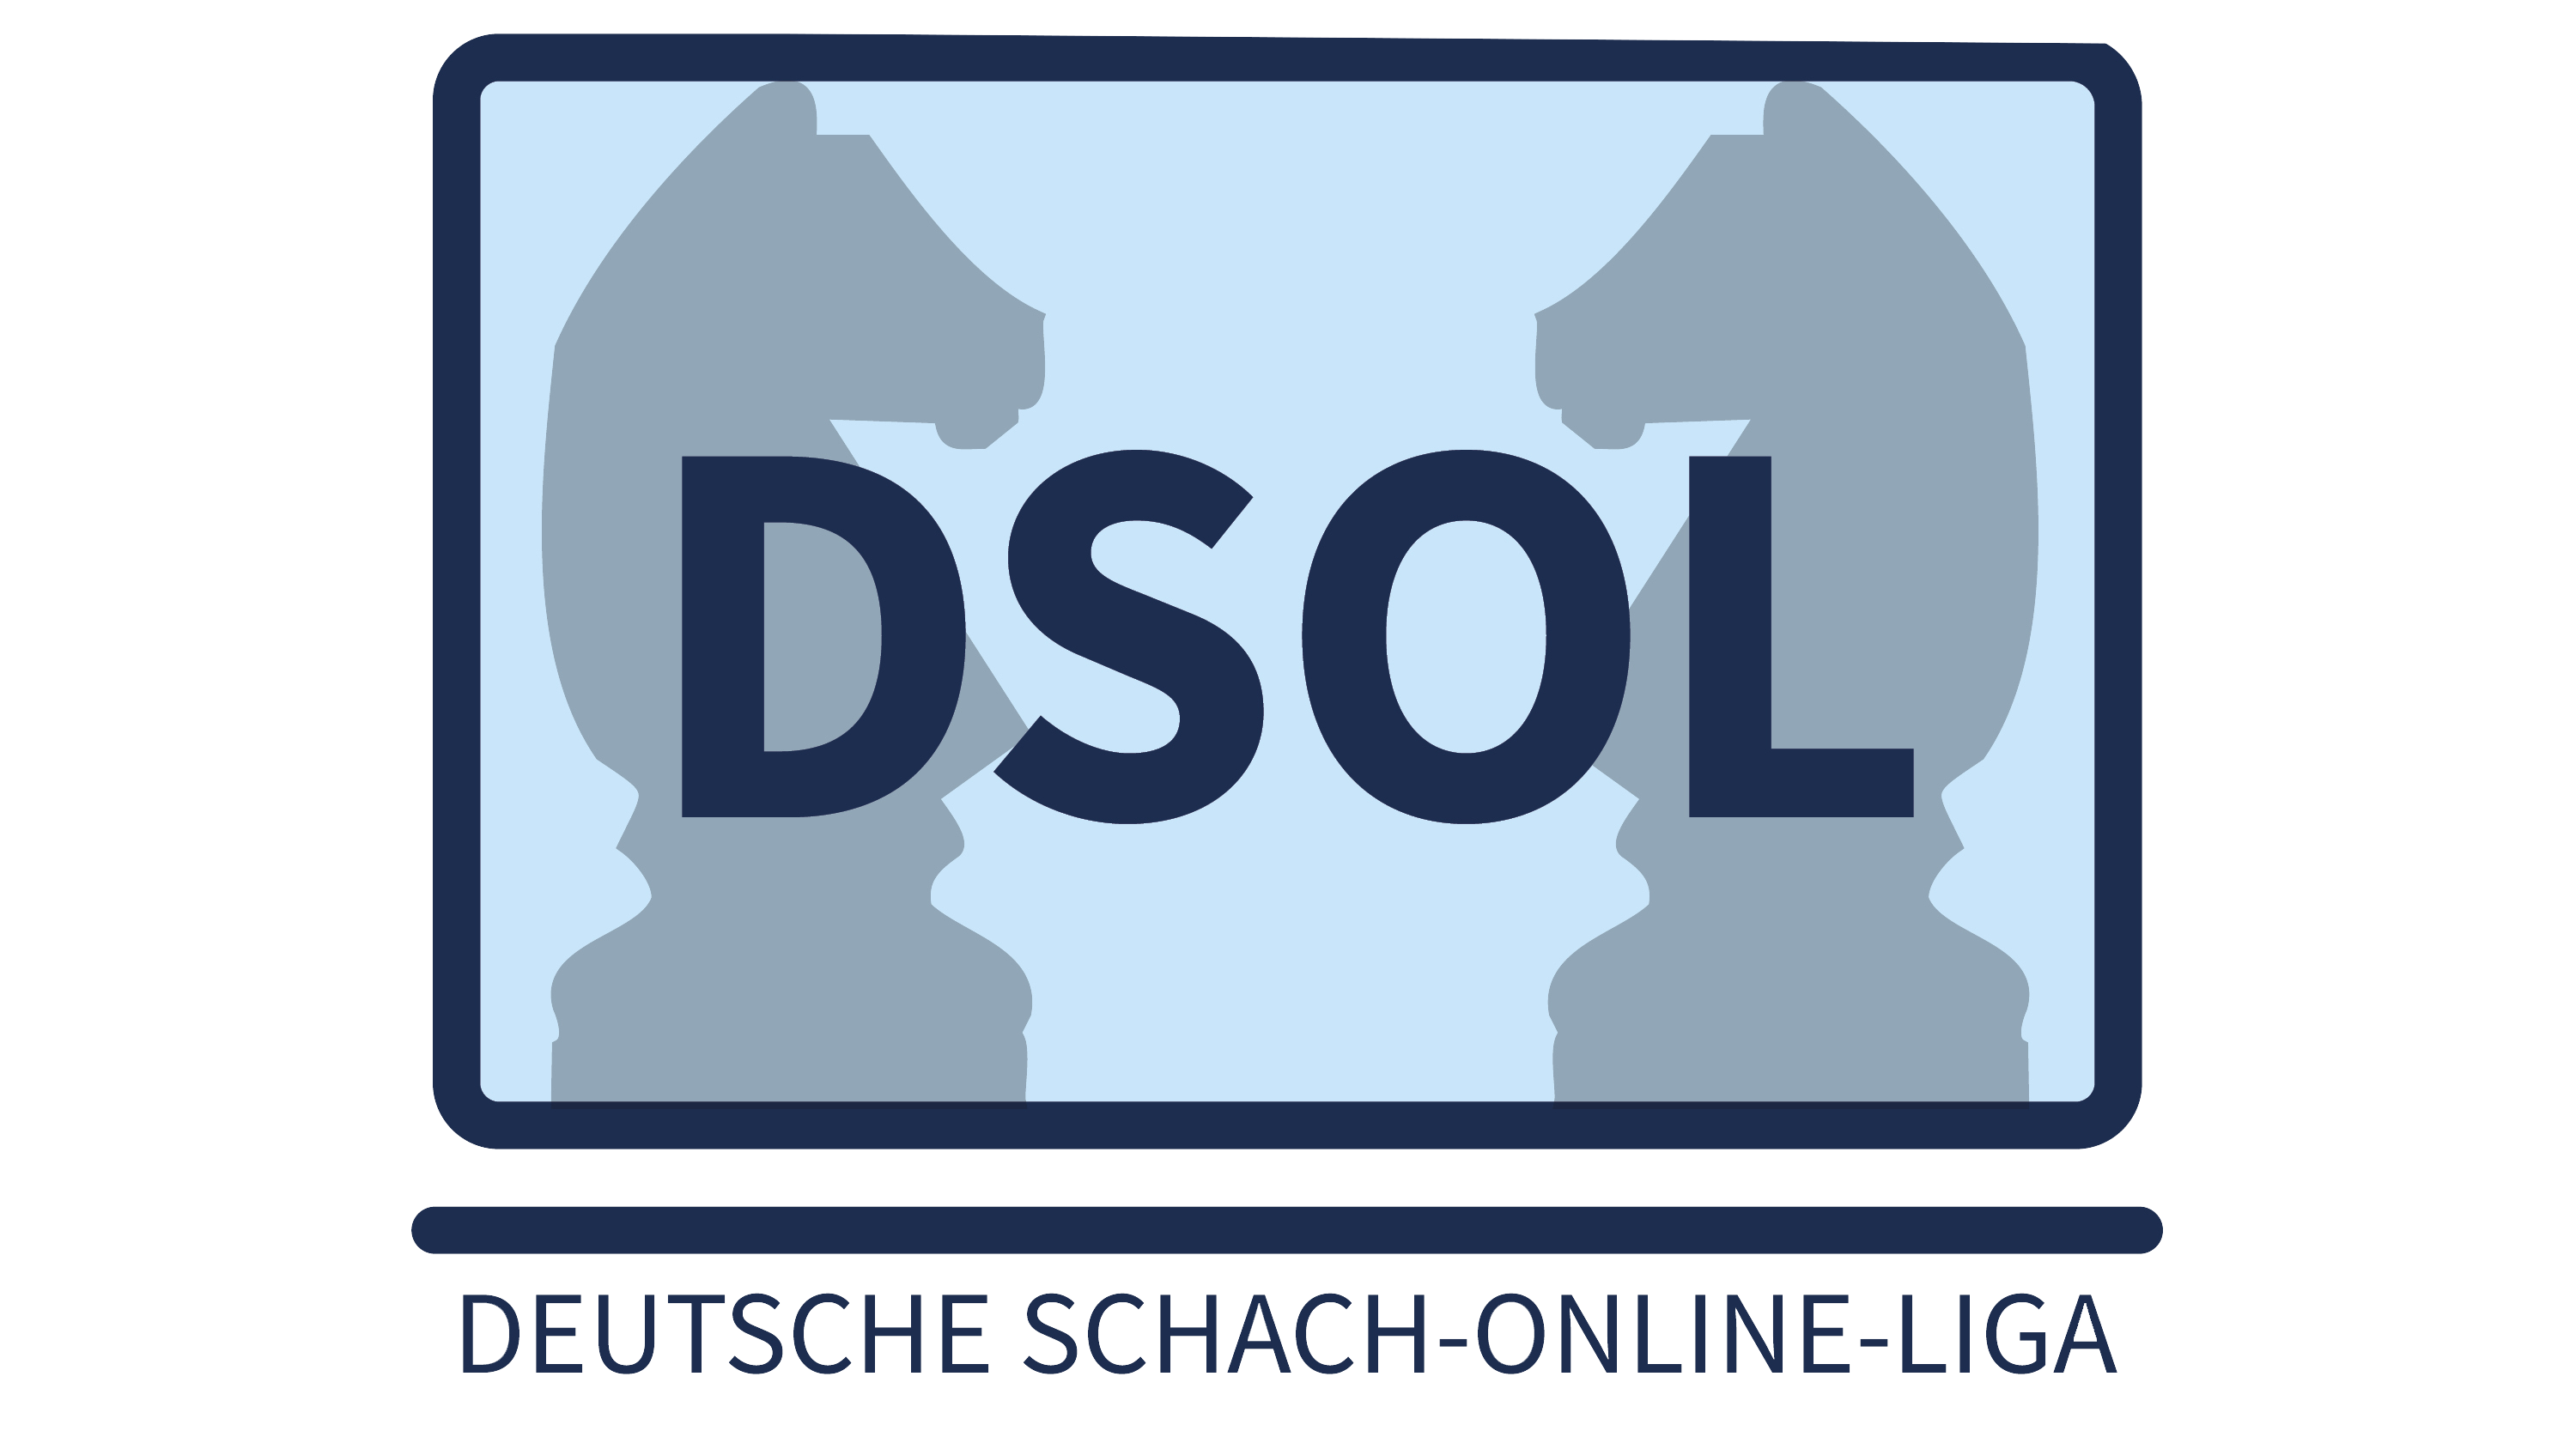 Deutsche Schach-Online-Liga 2021 - Deutscher Schachbund